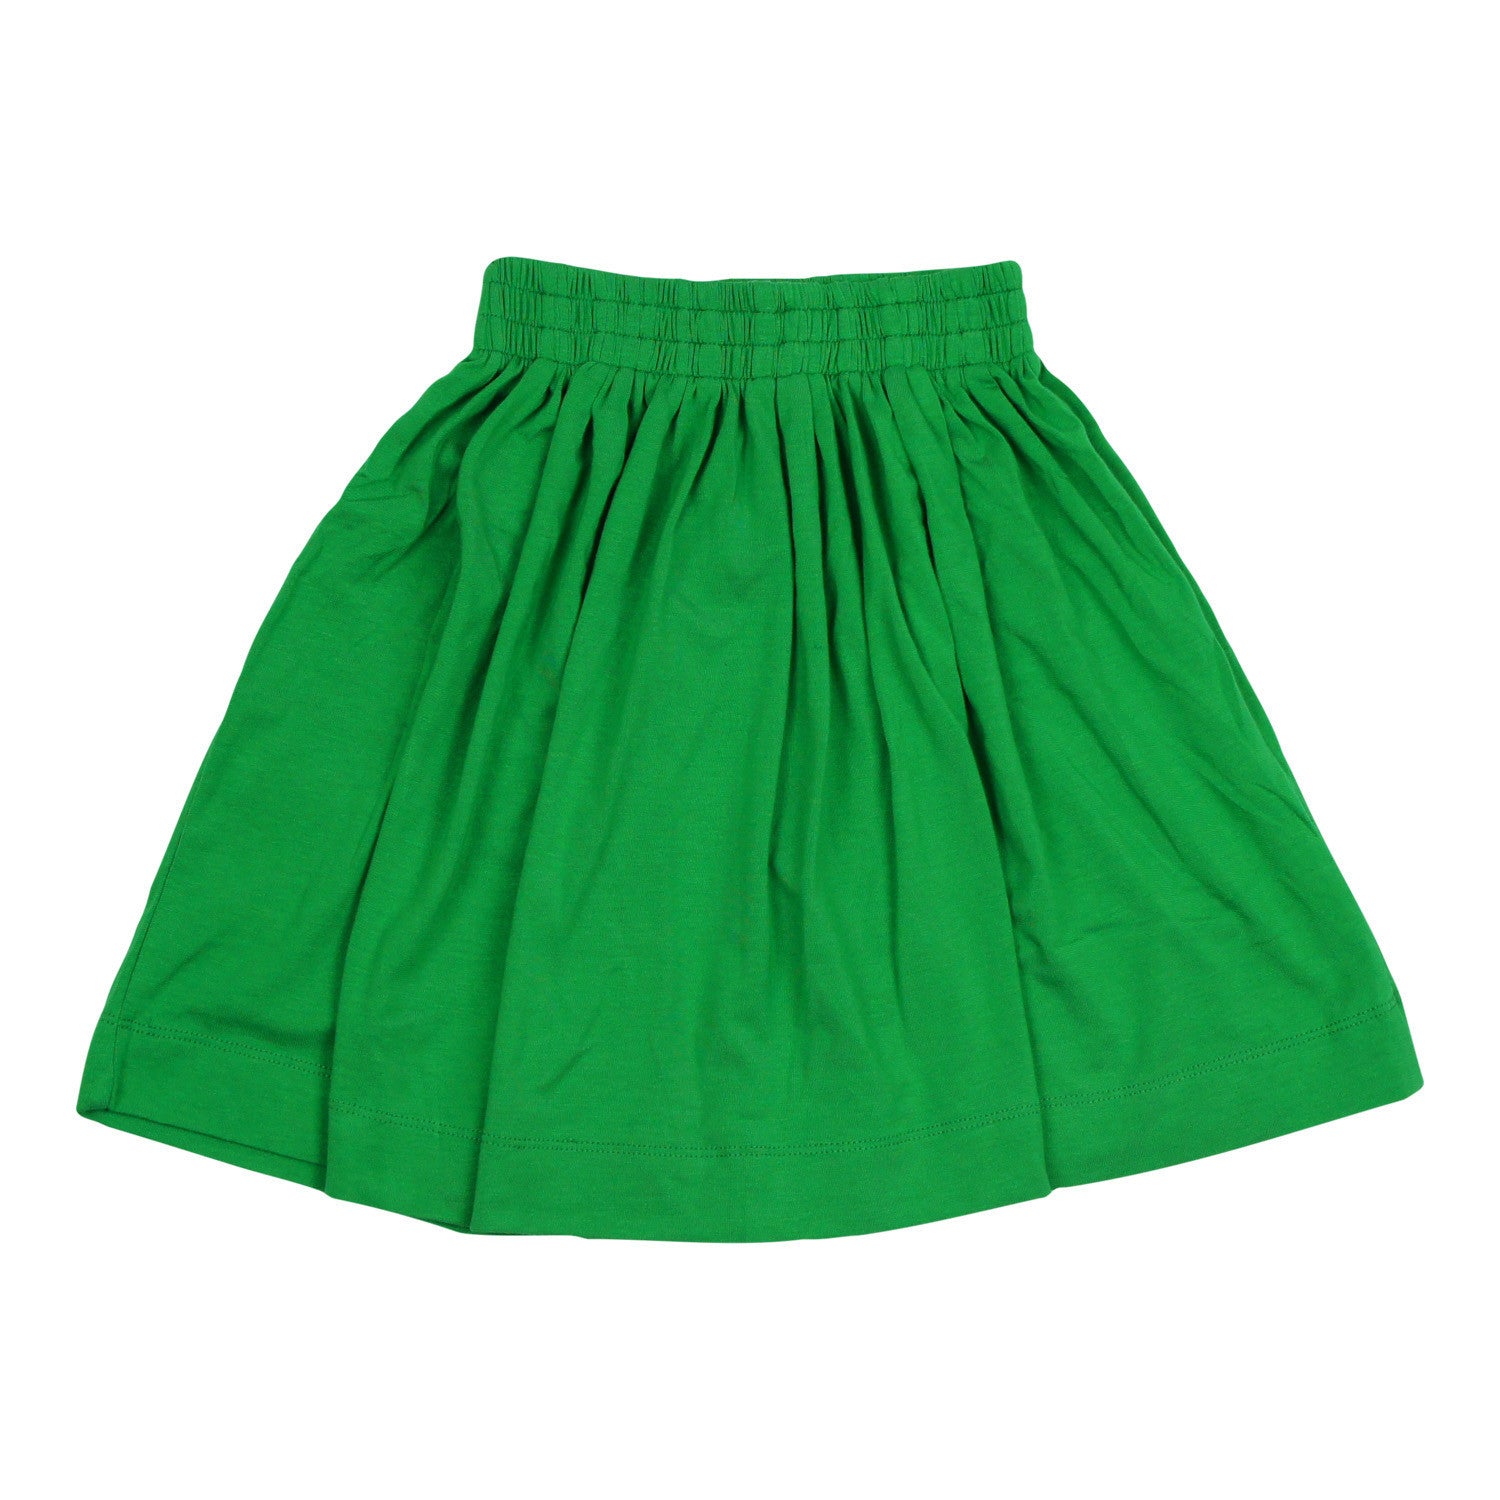 Teela Girls' Fern Green Summer Skirt - TeelaNYC